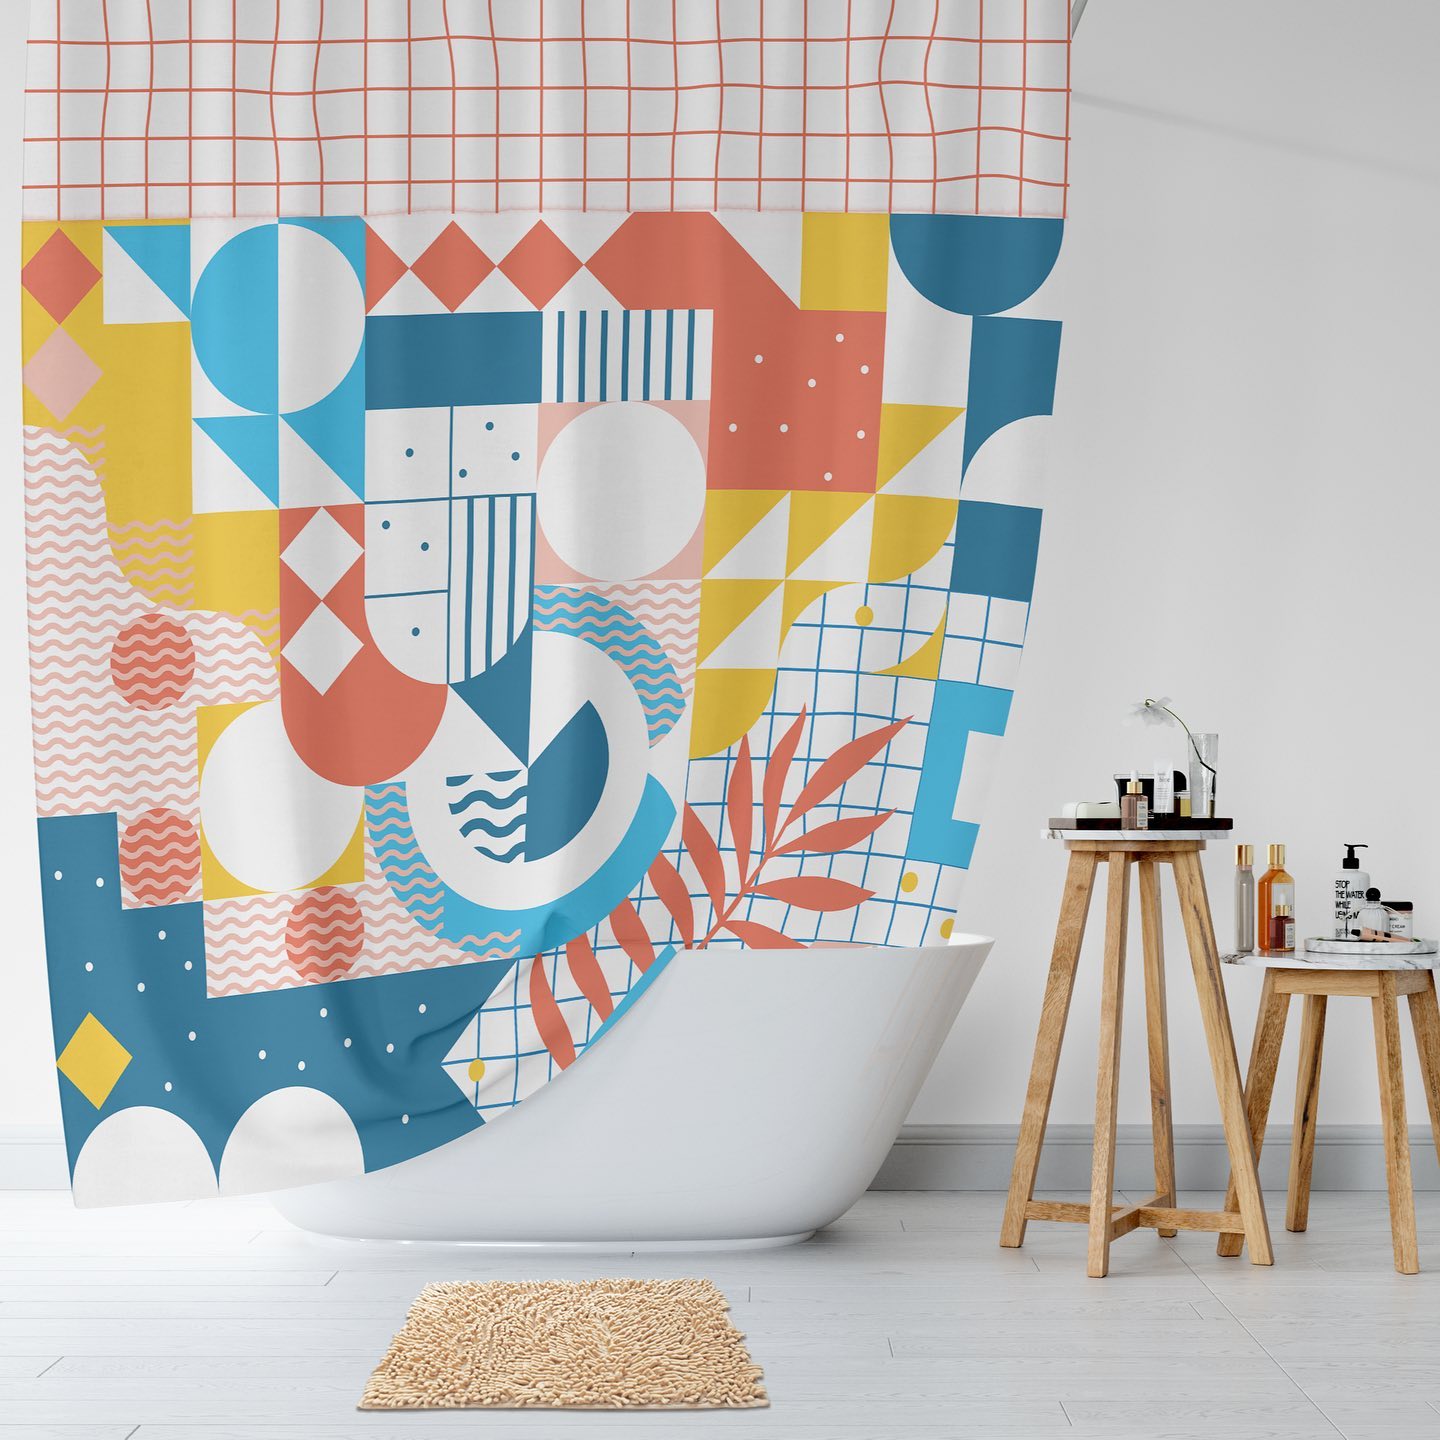 Cómo elegir las cortinas de baño – Alveta Design